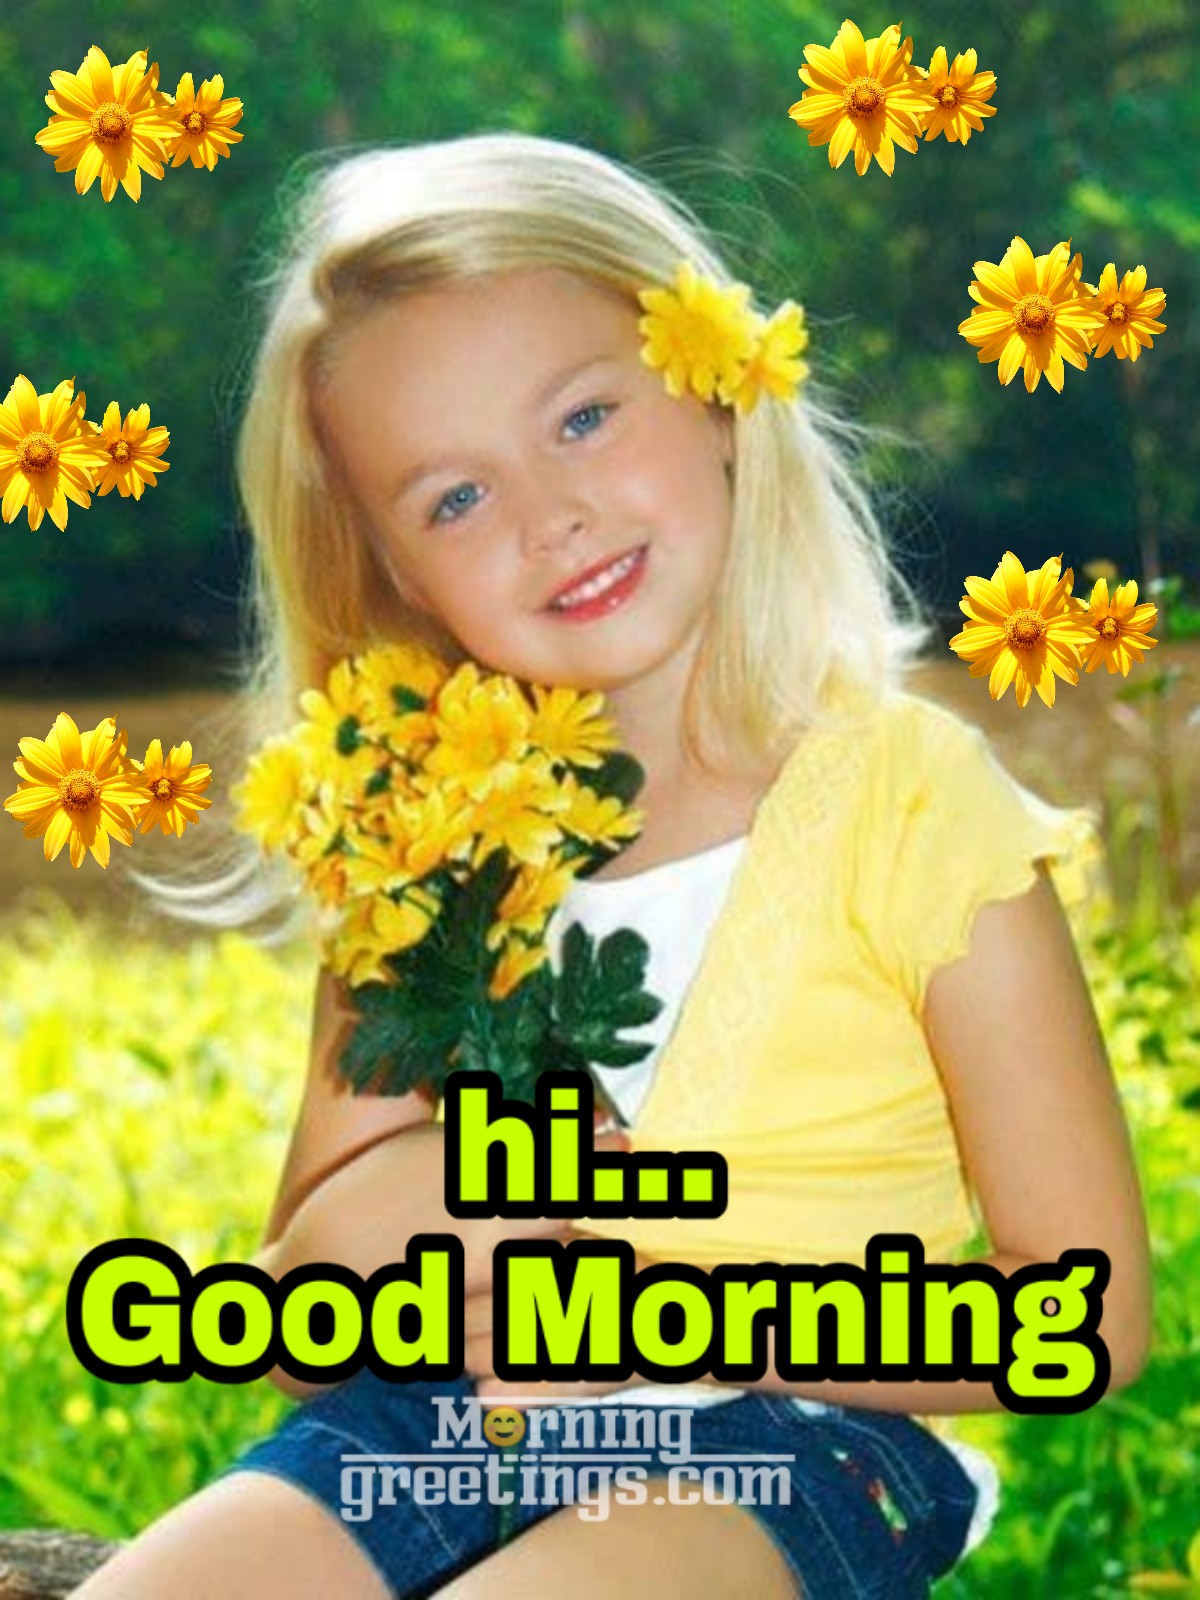 Hi Good Morning Girl